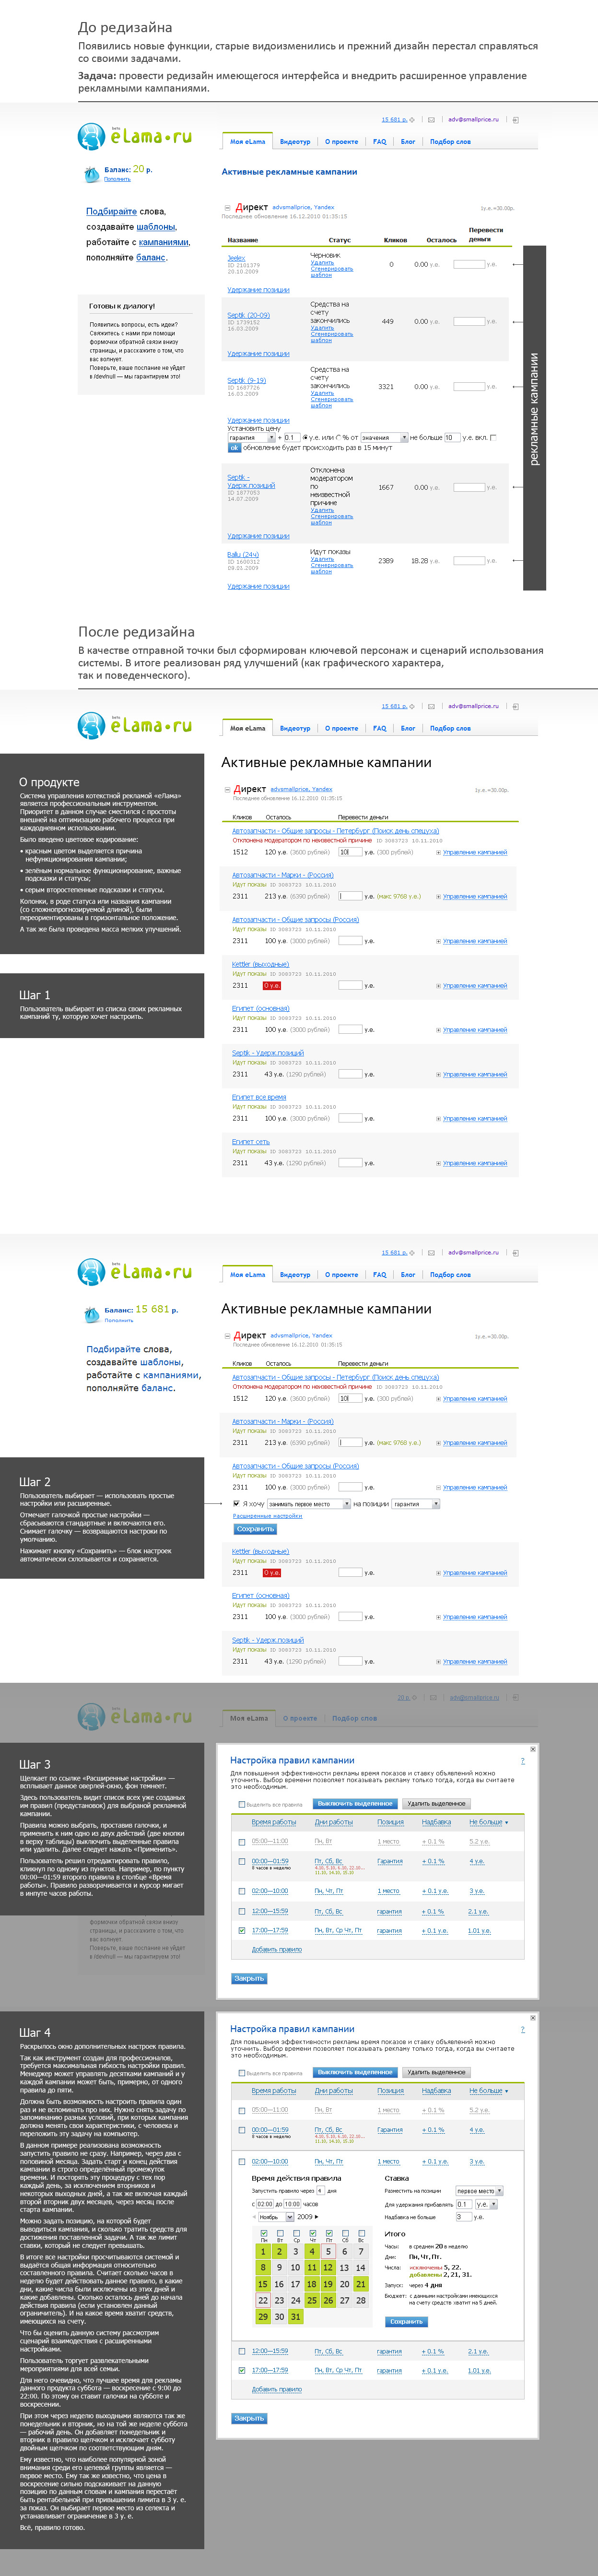 Система управления контекстной рекламой (Гугл, Яндекс, бегун)